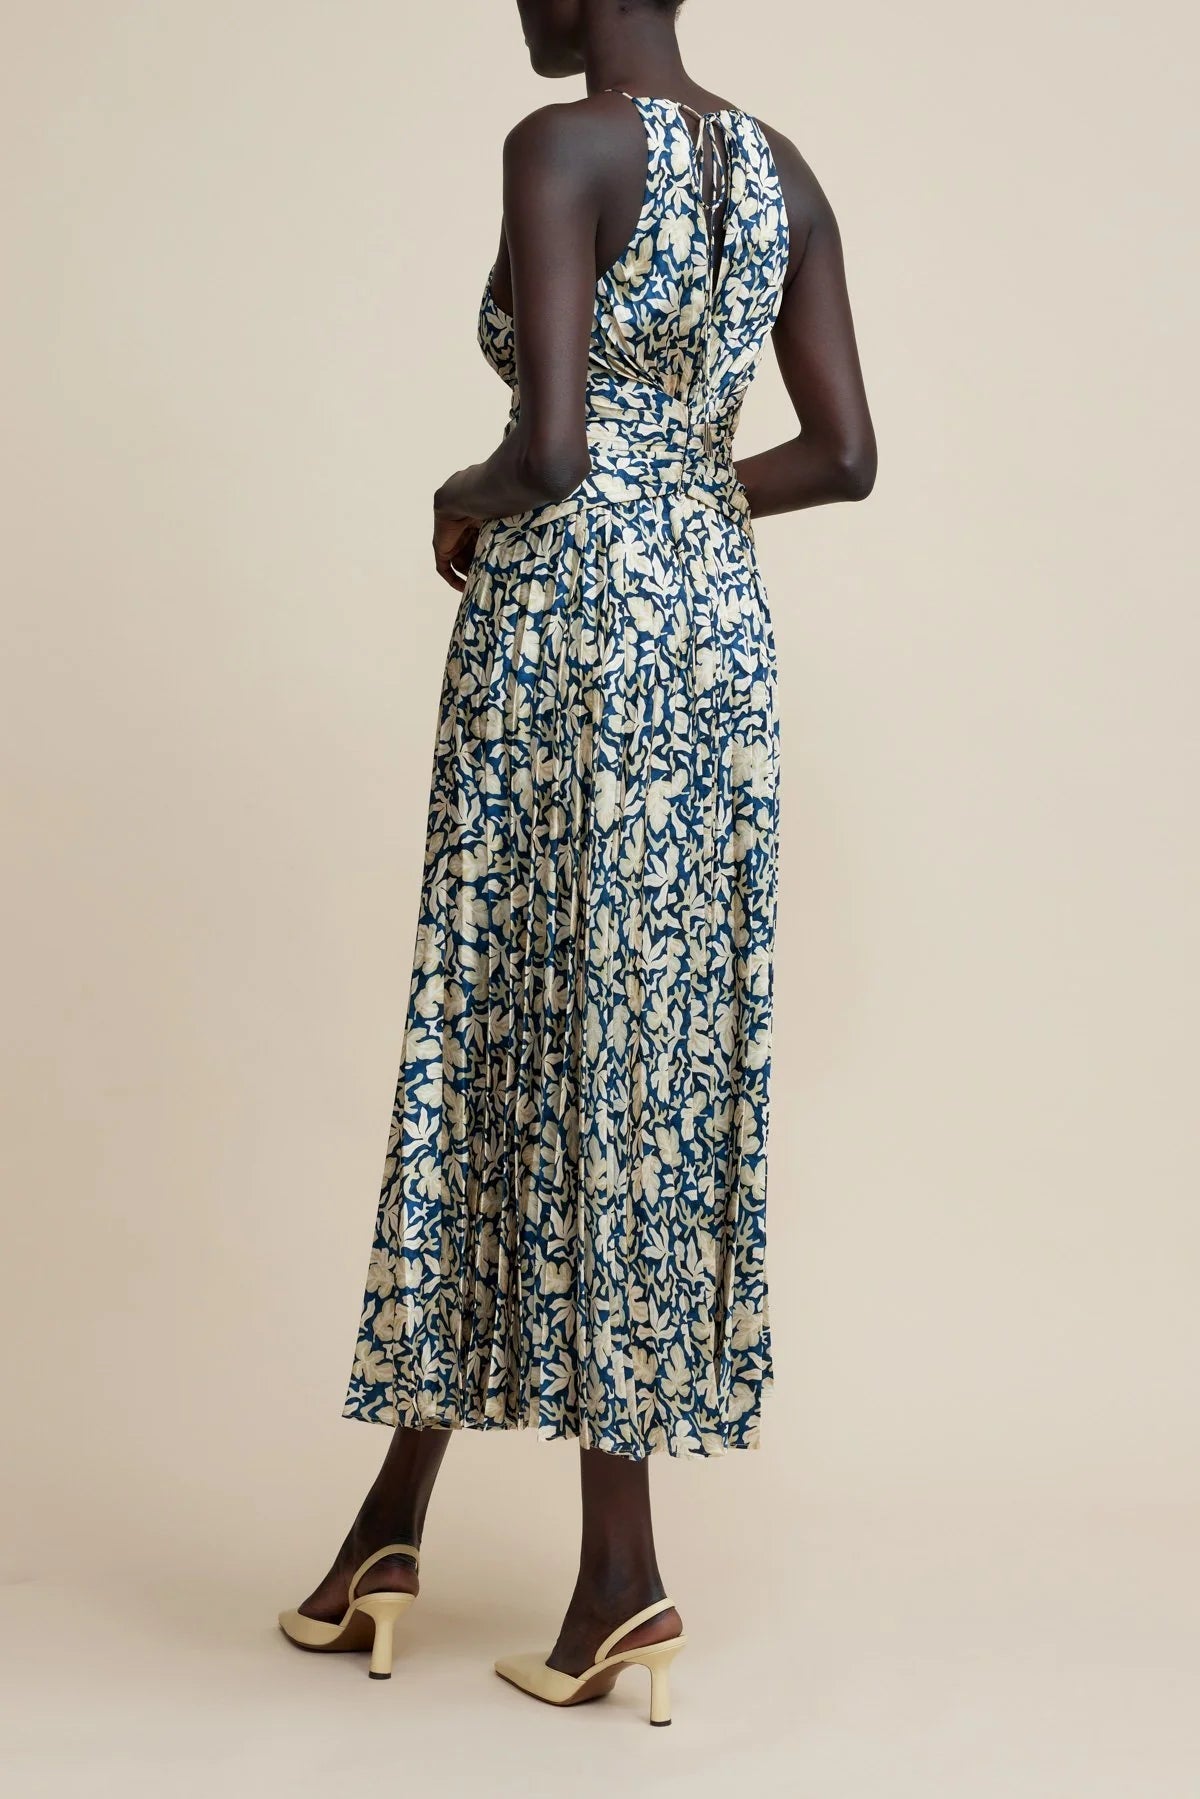 Acler Montague Midi Dress in Sea Forest Print - Estilo Boutique